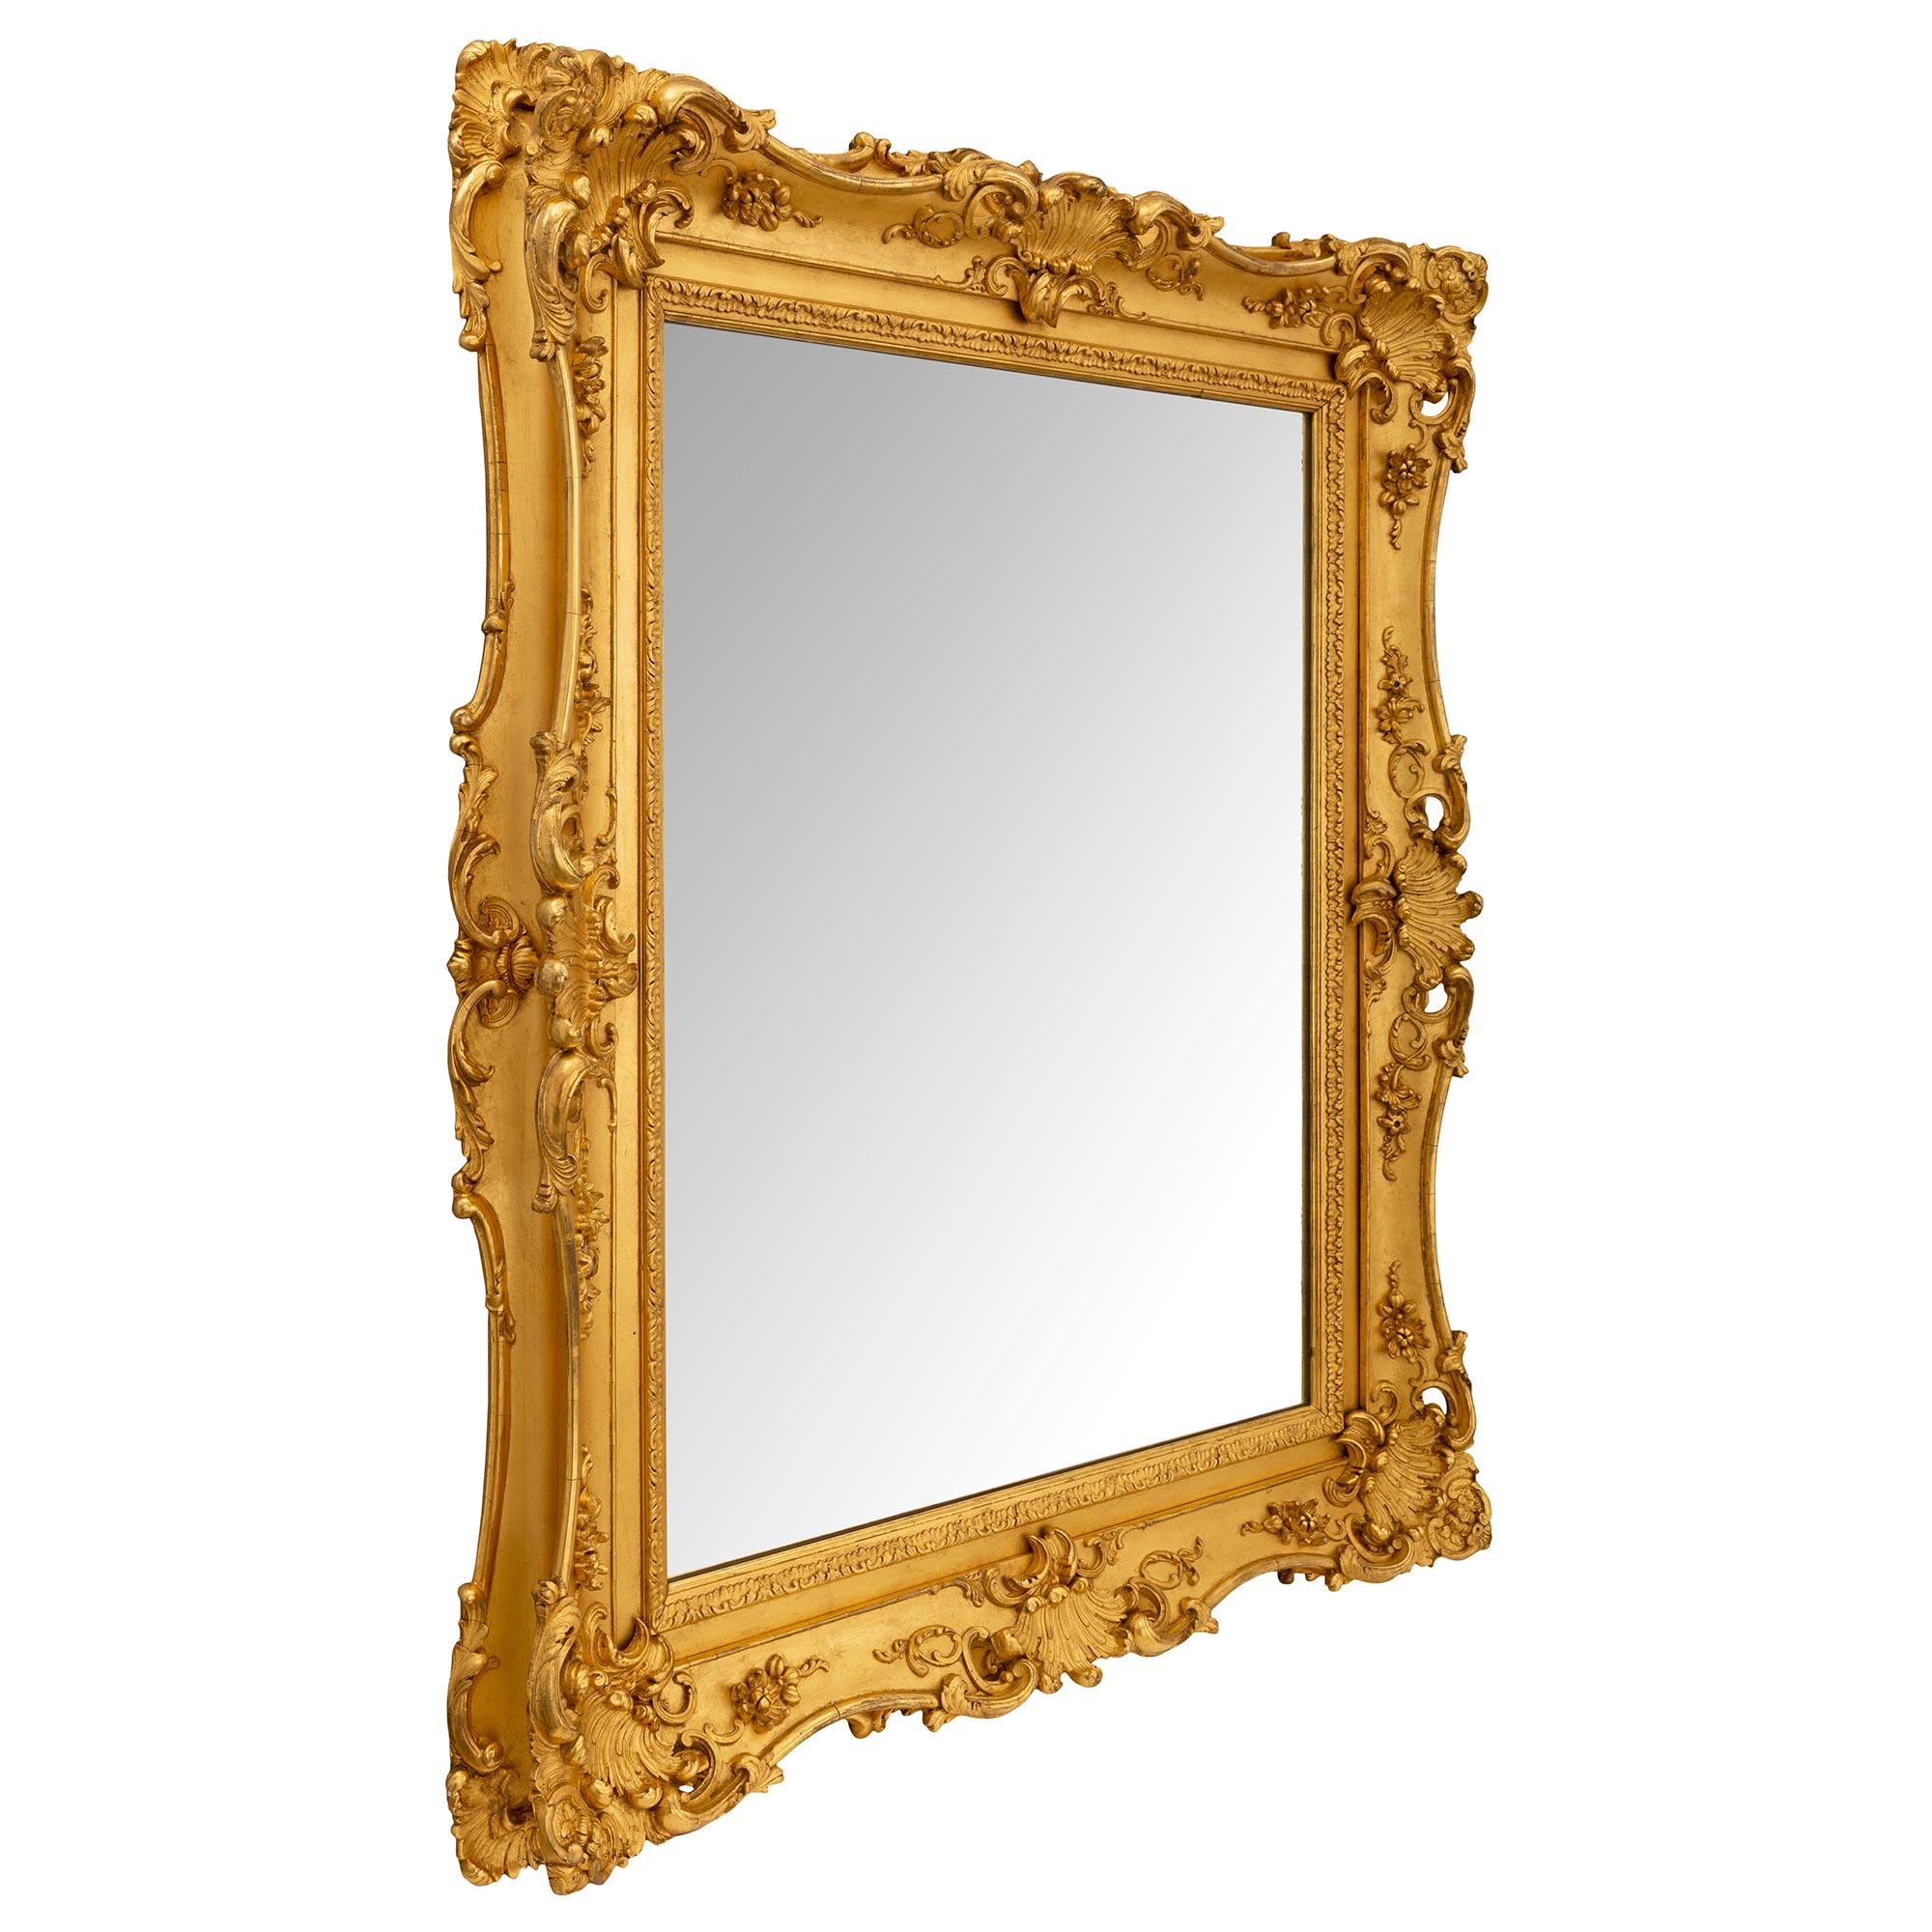 Miroir en bois doré Louis XV du 19ème siècle. Le miroir conserve sa plaque d'origine encadrée dans une fine bordure droite chinée avec une fine bande feuillagée. Le cadre présente une forme festonnée élégante et très décorative, avec de magnifiques